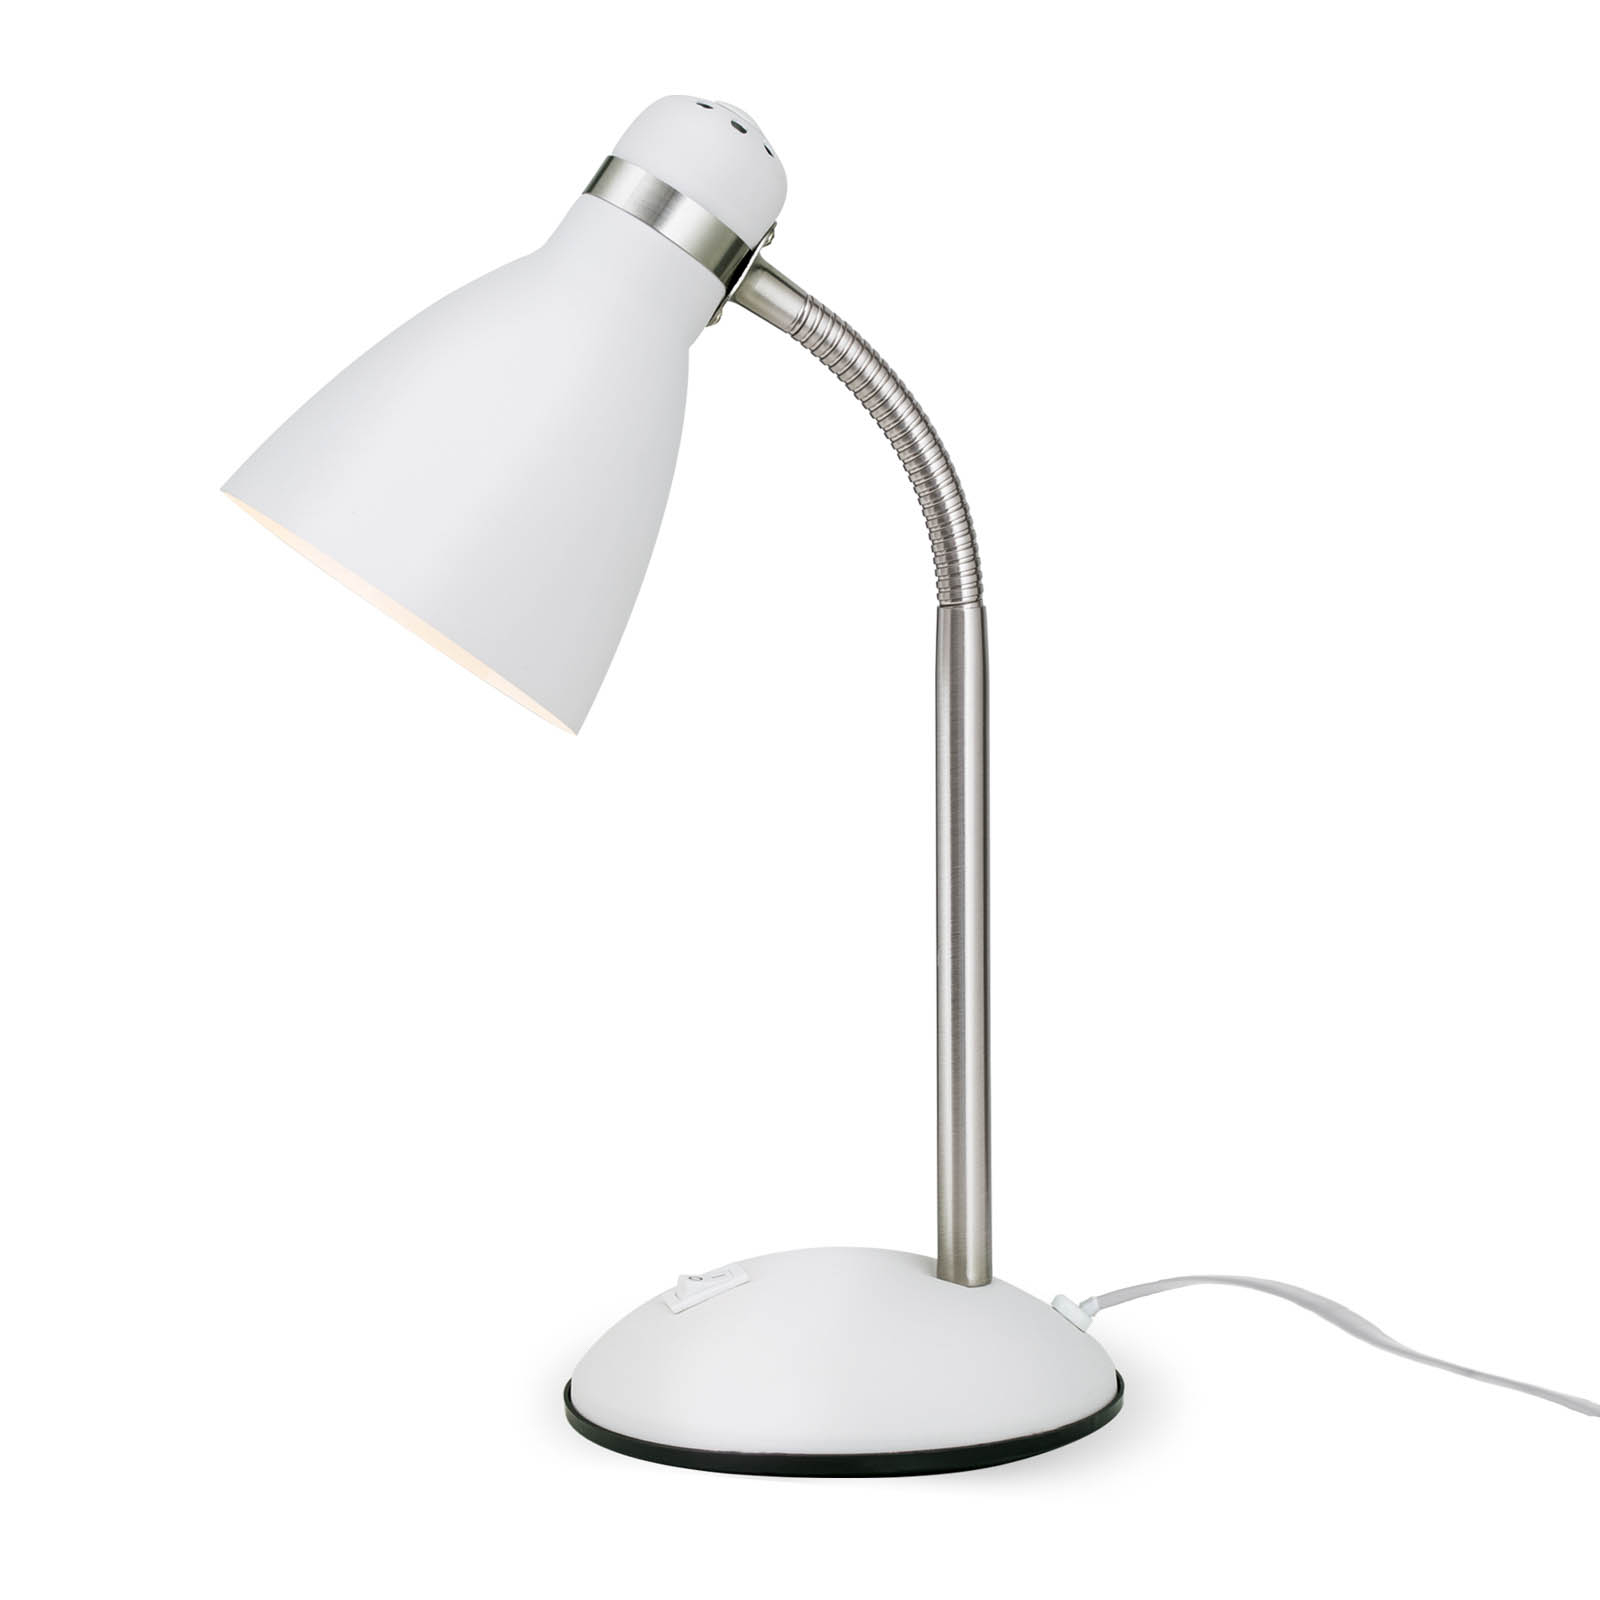 School desk lamp, white